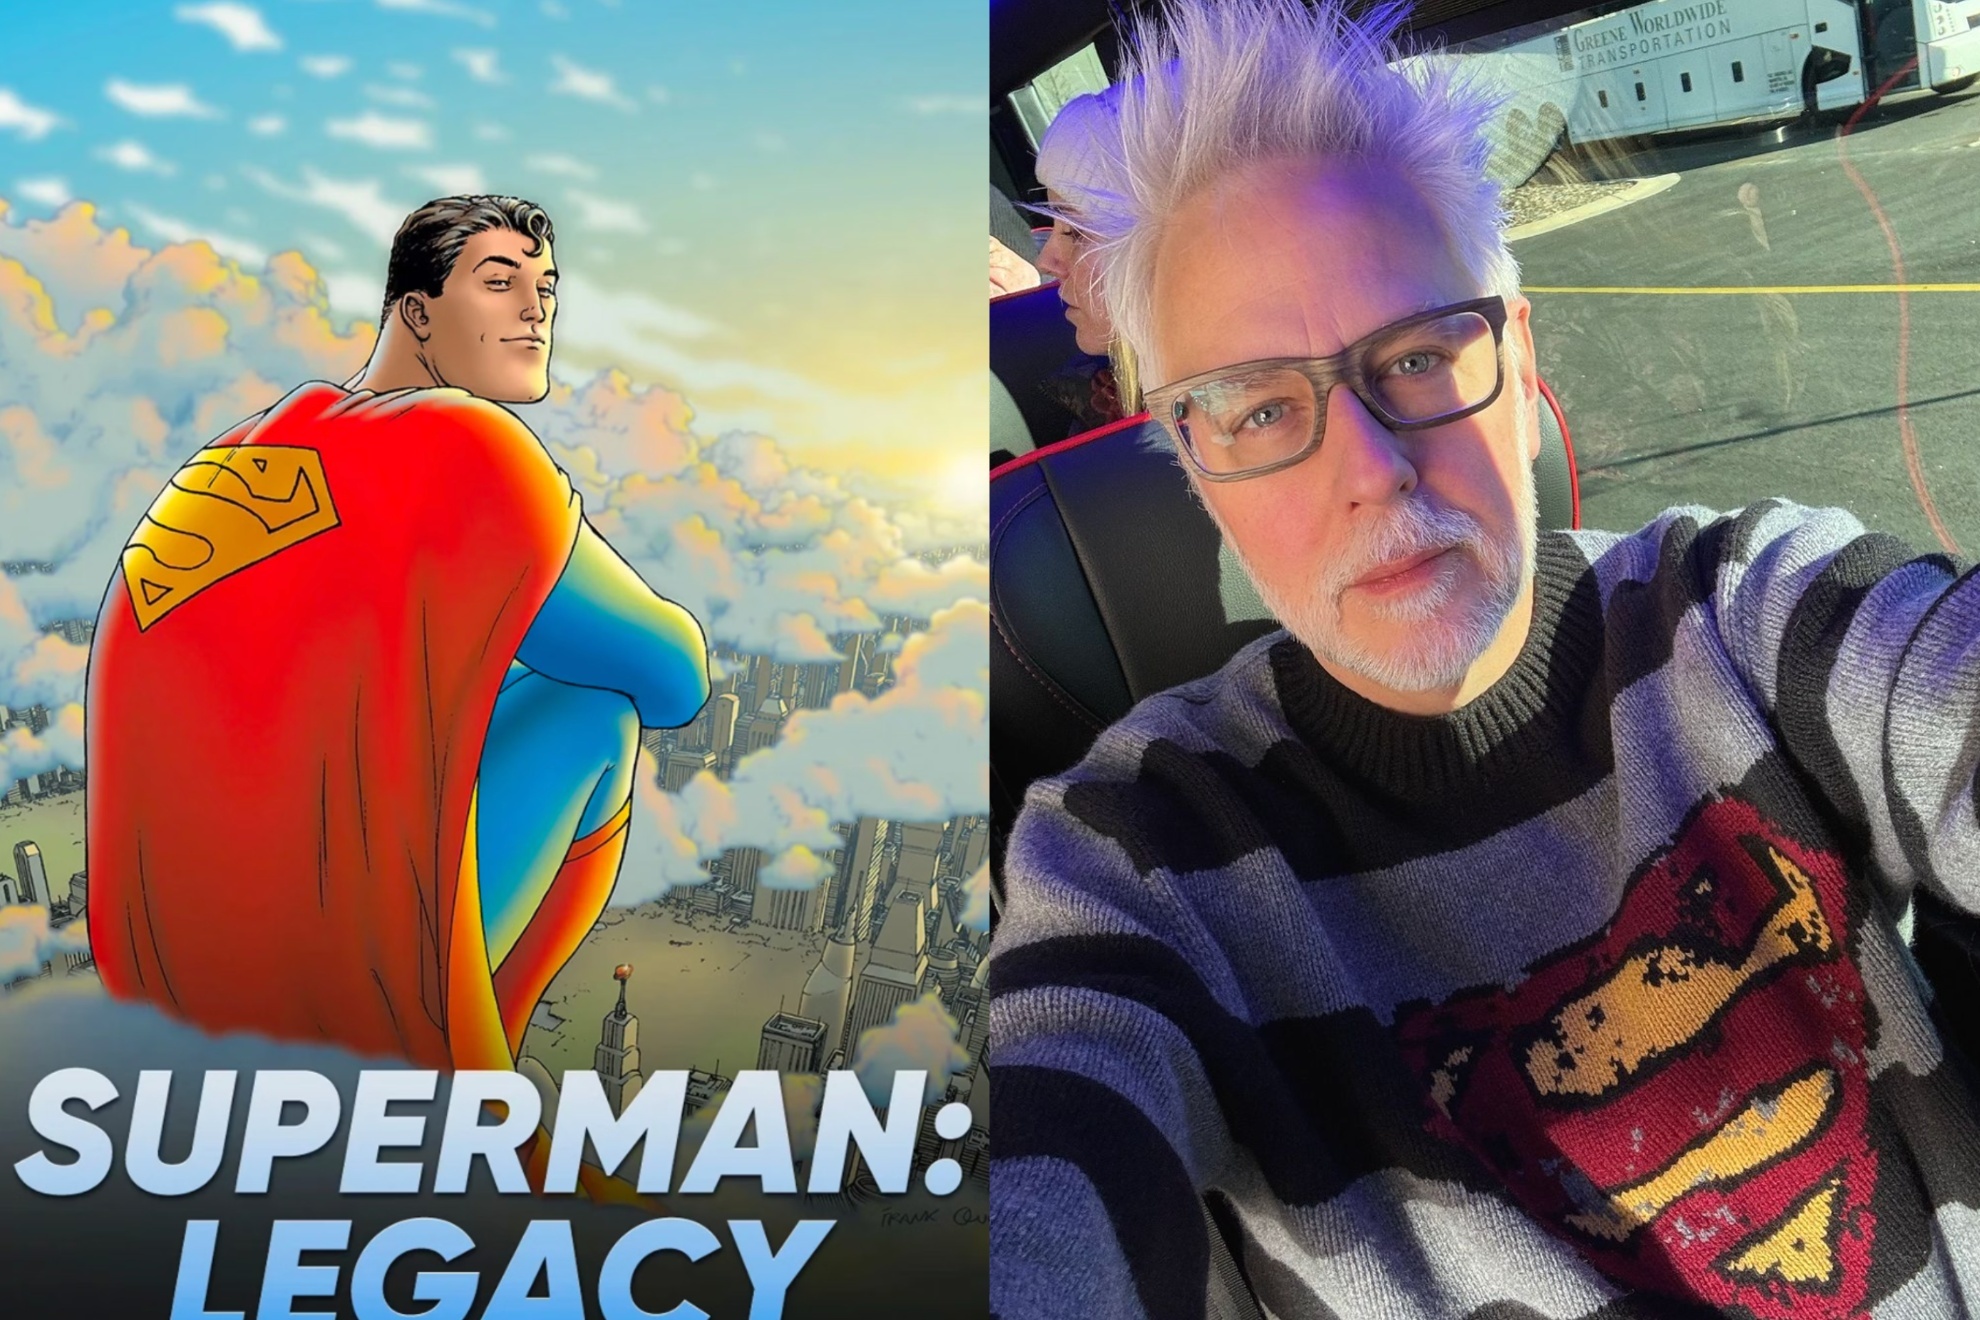 Mashup image of Superman and James Gunn